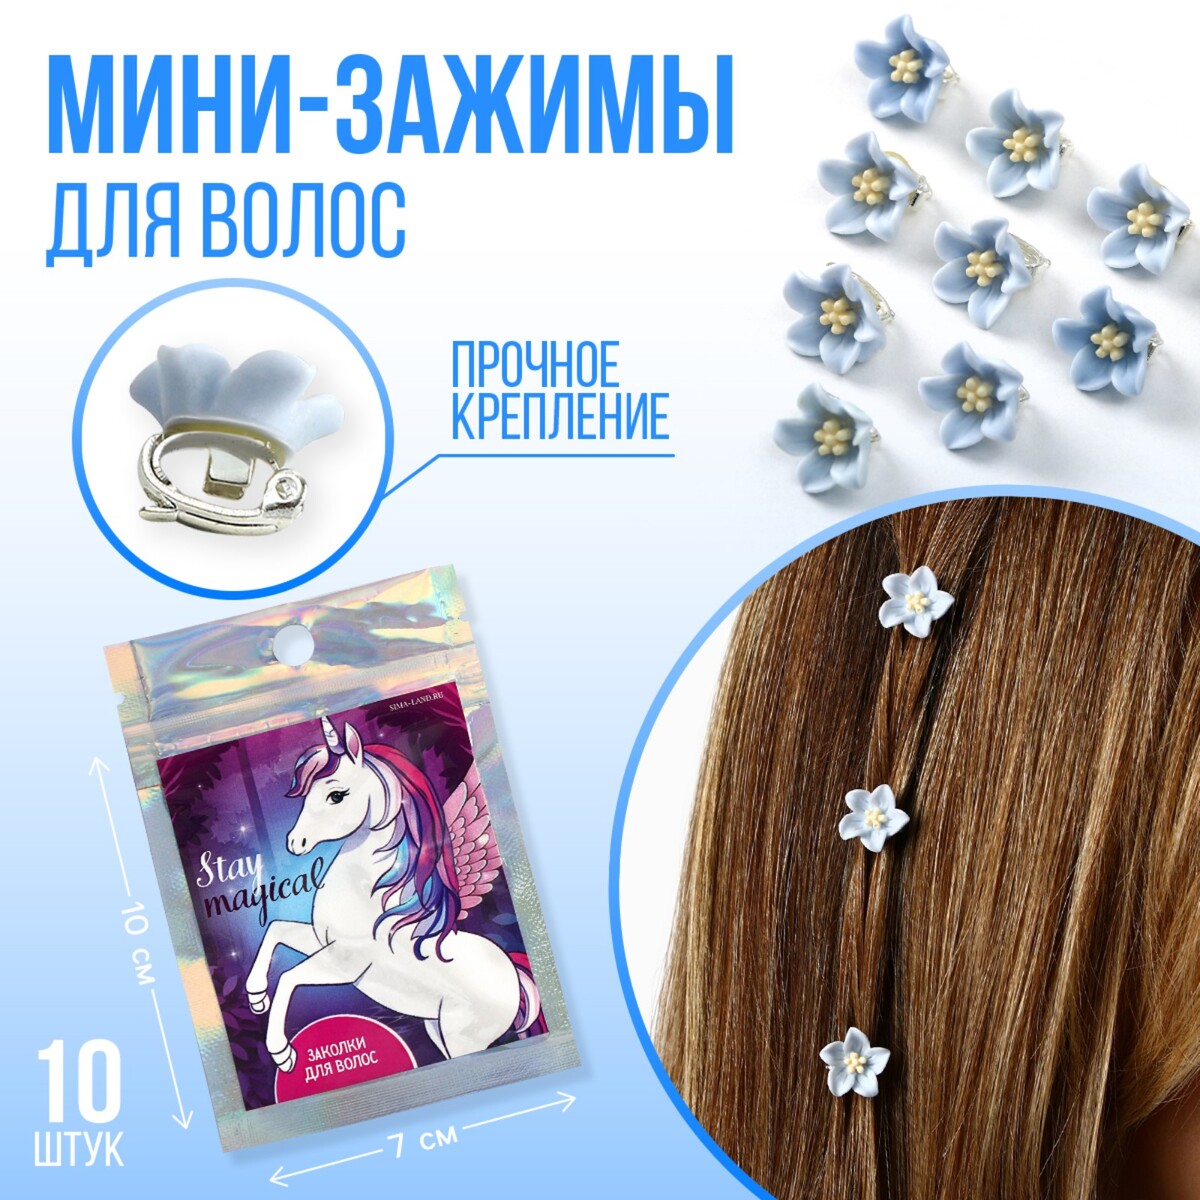 Набор мини-зажимов для украшения волос stay magical, 10 шт., 1.3 х 1.3 х 1.5 см комплект аксессуаров disney для волос расческа резинка 6 шт для девочки